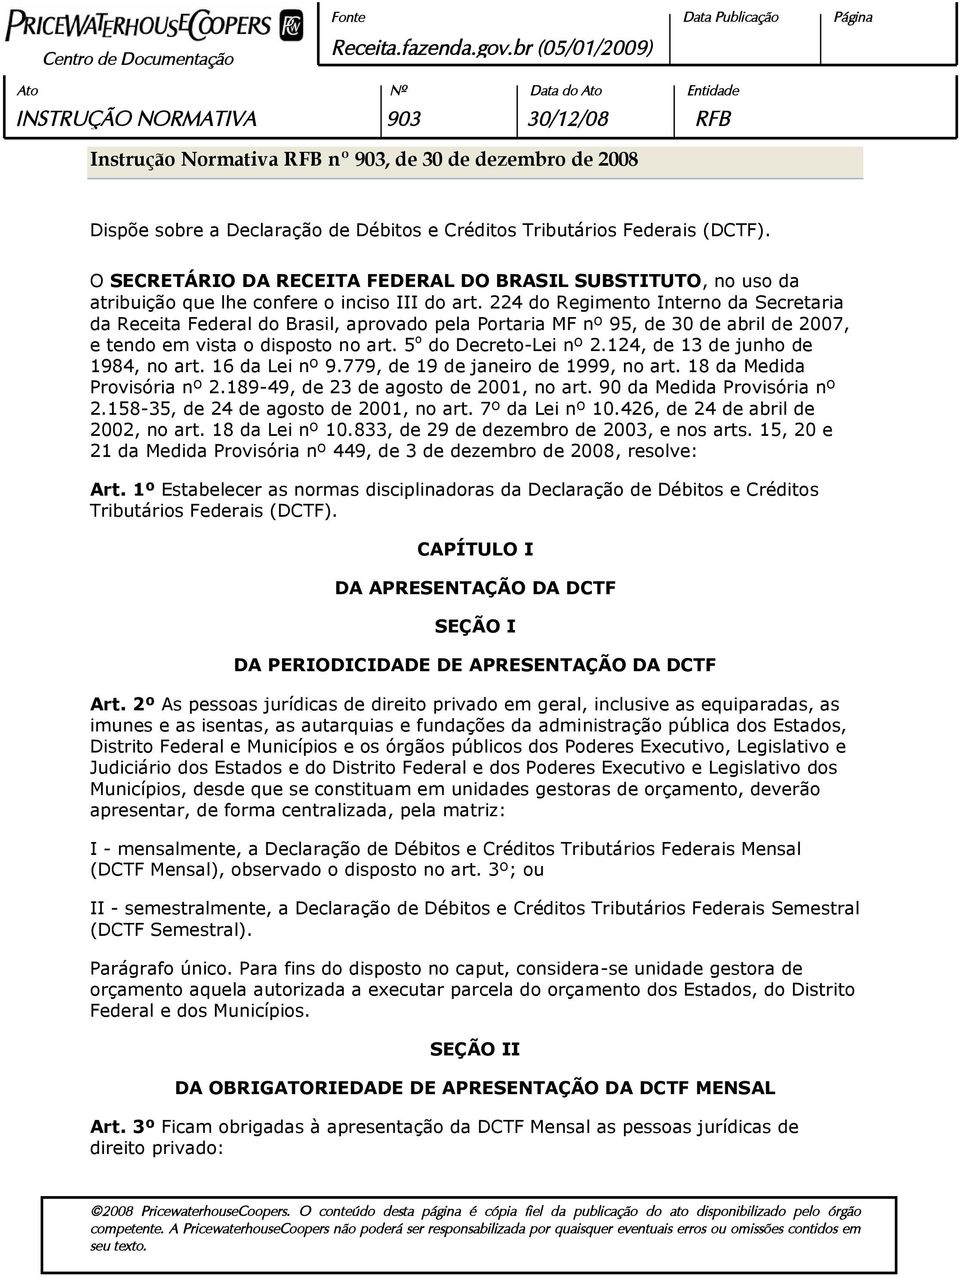 224 do Regimento Interno da Secretaria da Receita Federal do Brasil, aprovado pela Portaria MF nº 95, de 30 de abril de 2007, e tendo em vista o disposto no art. 5 o do Decreto-Lei nº 2.